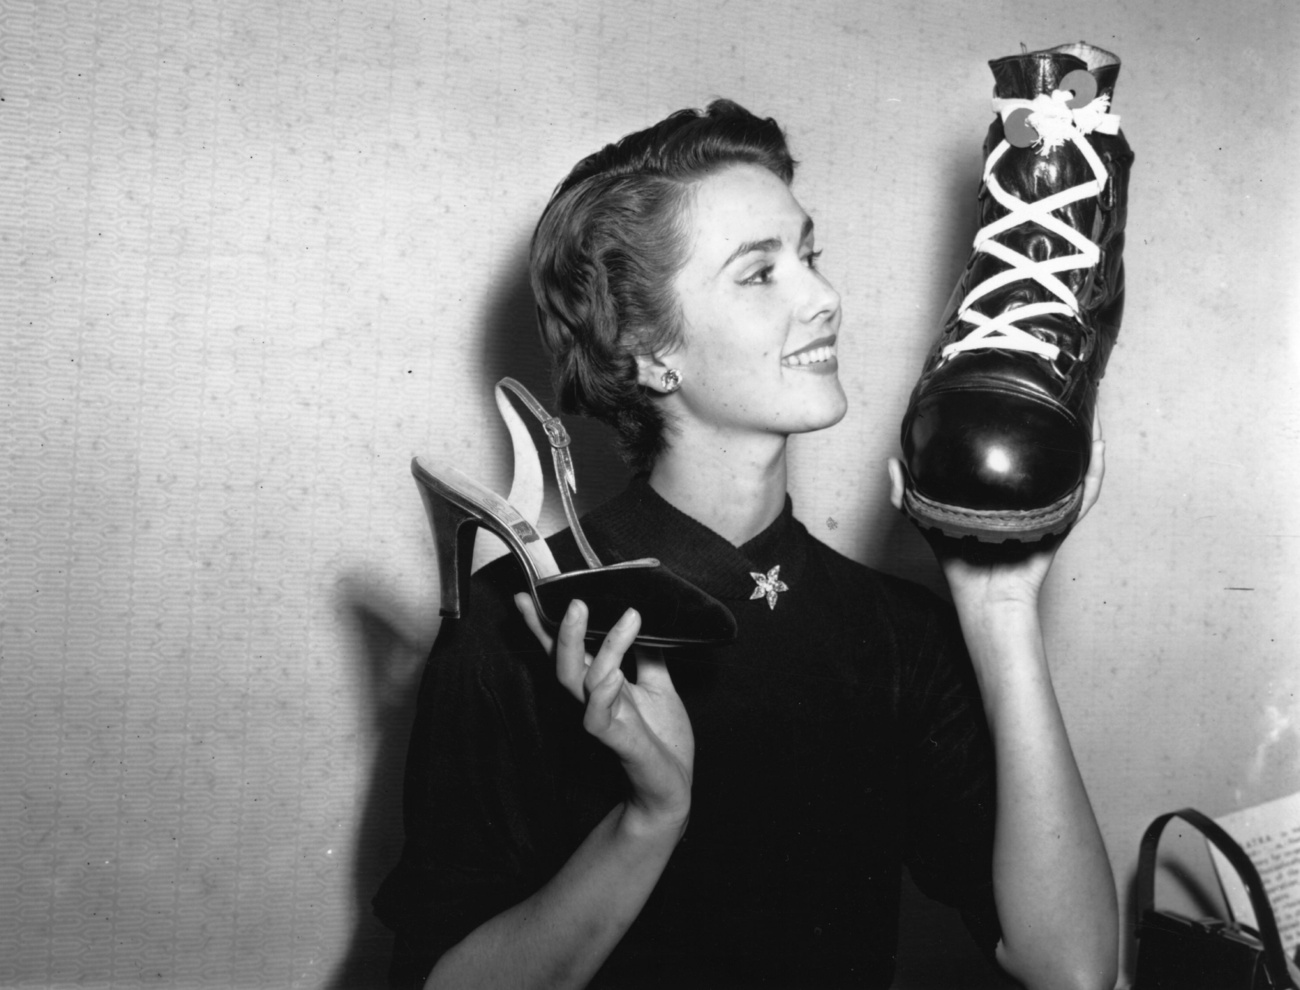 Egy hirdetőtábla az 1930-as évekből. Mindegyik cipő 8,75 dollárba került, és különleges párnázottságuknak köszönhetően nagyon kényelmes viseletnek számítottak - állítják.